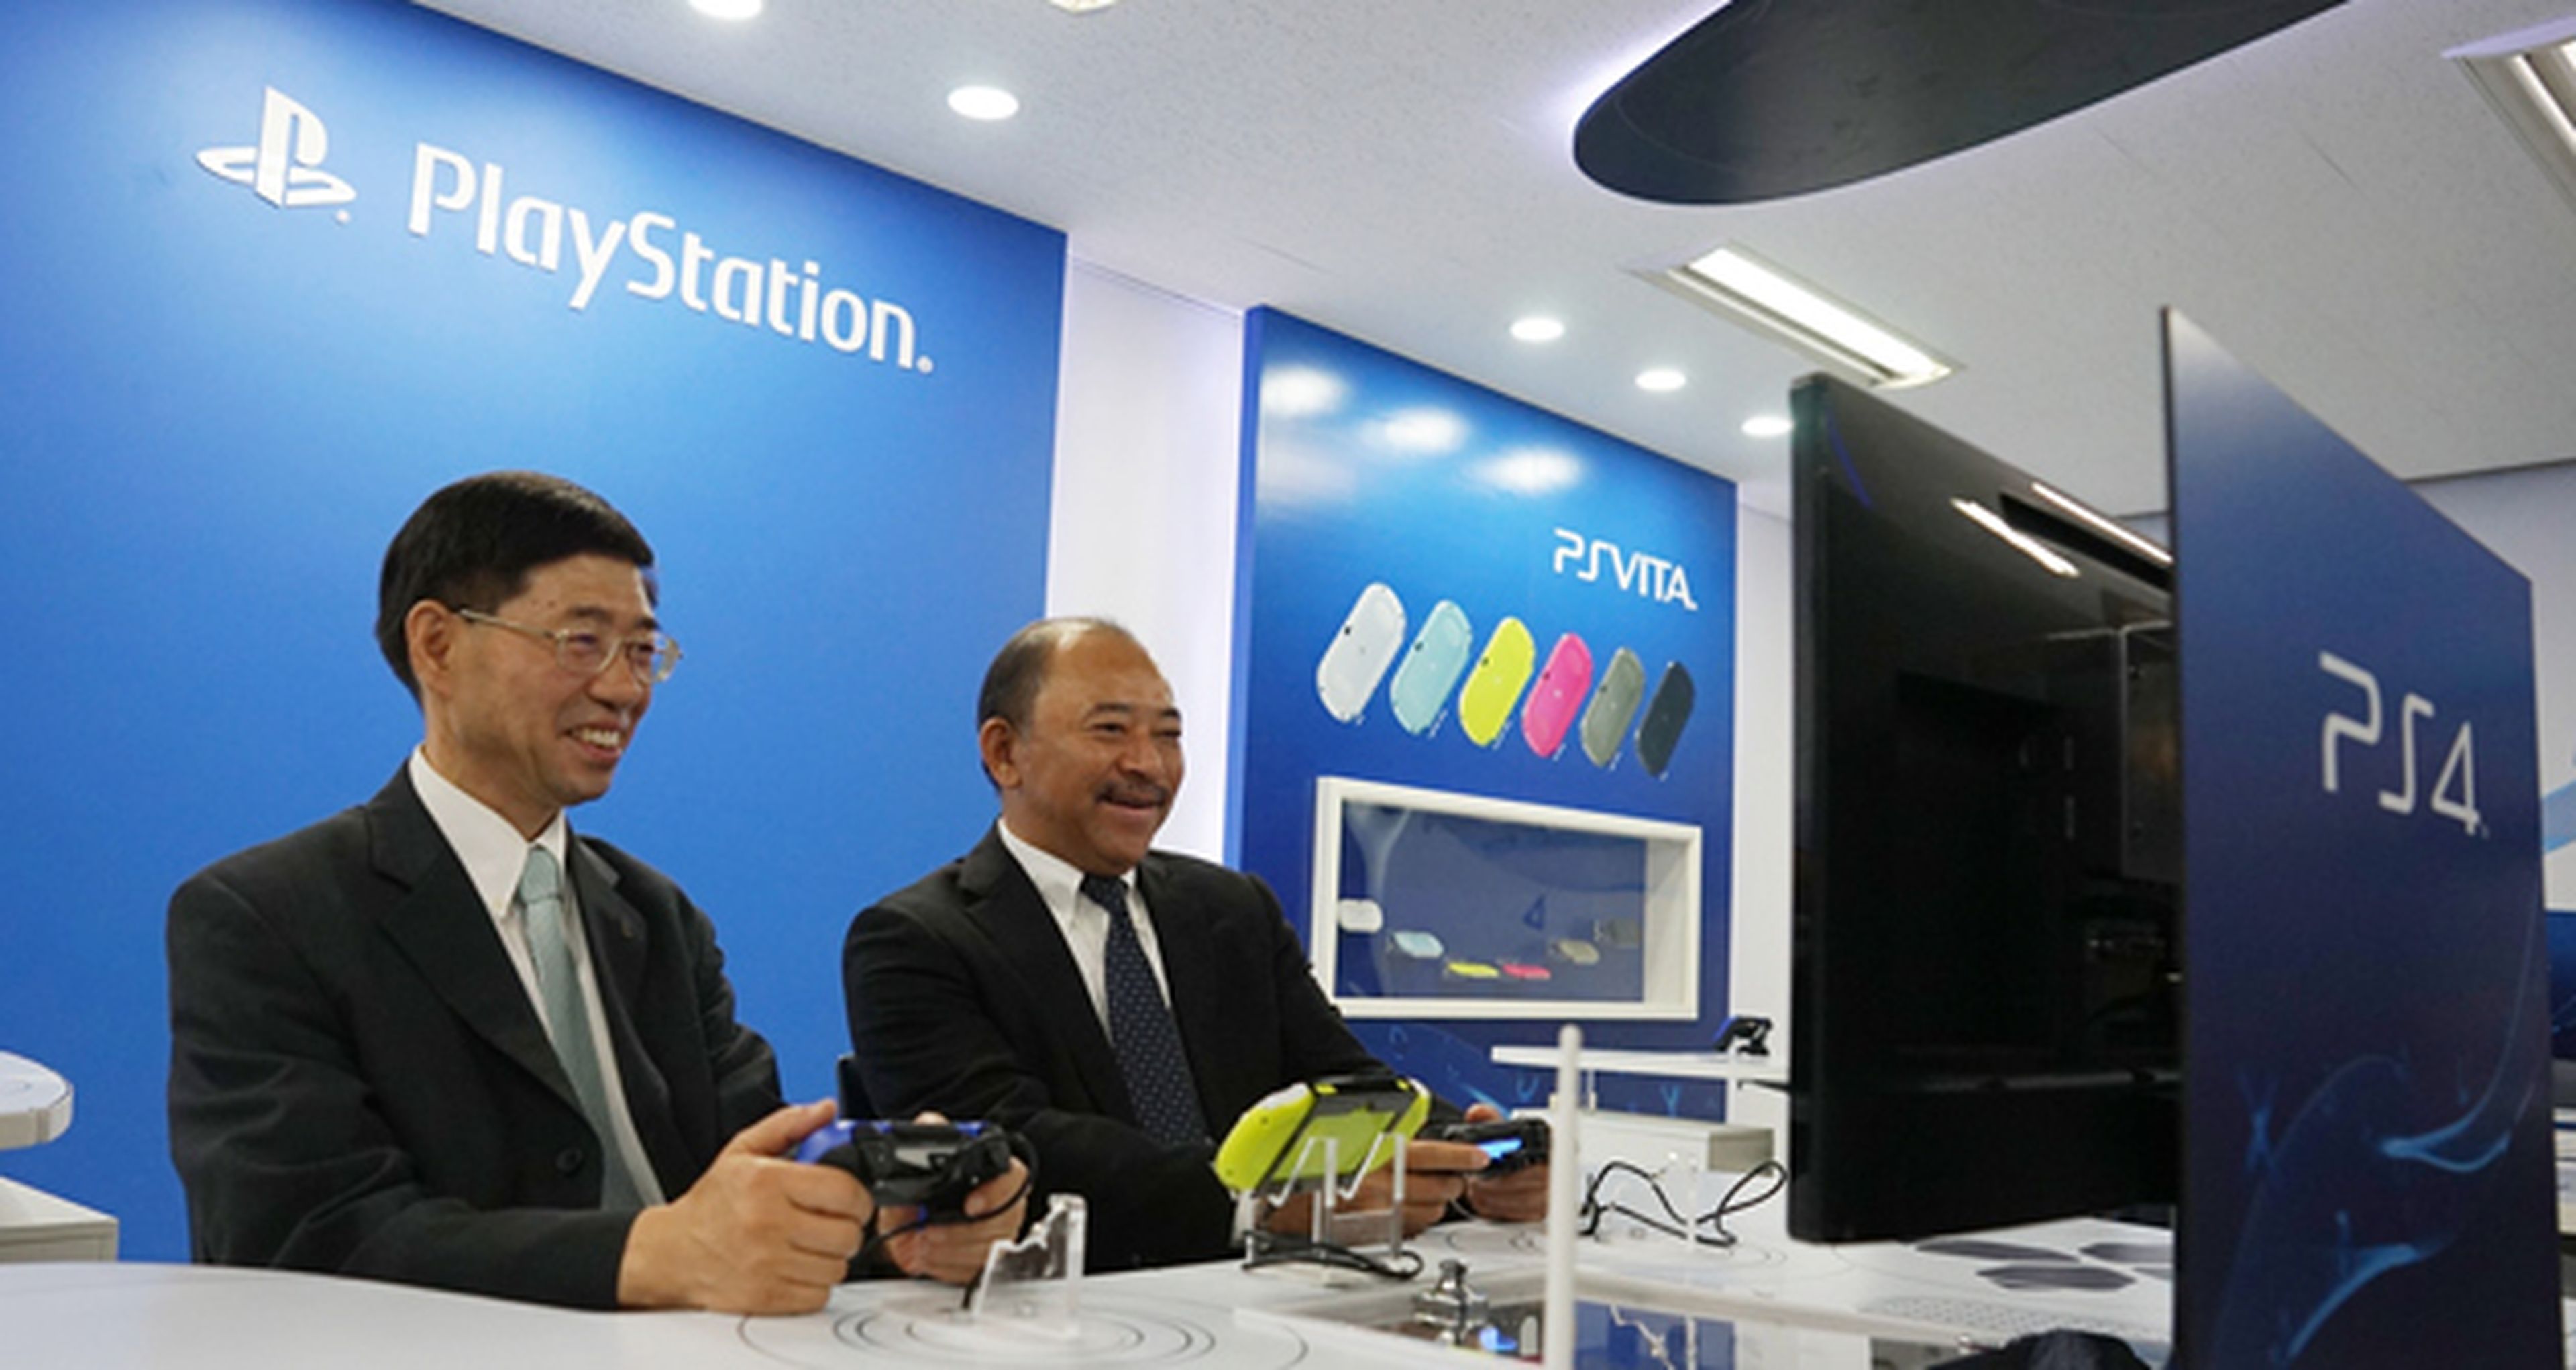 PlayStation se convierte en asignatura en una universidad coreana